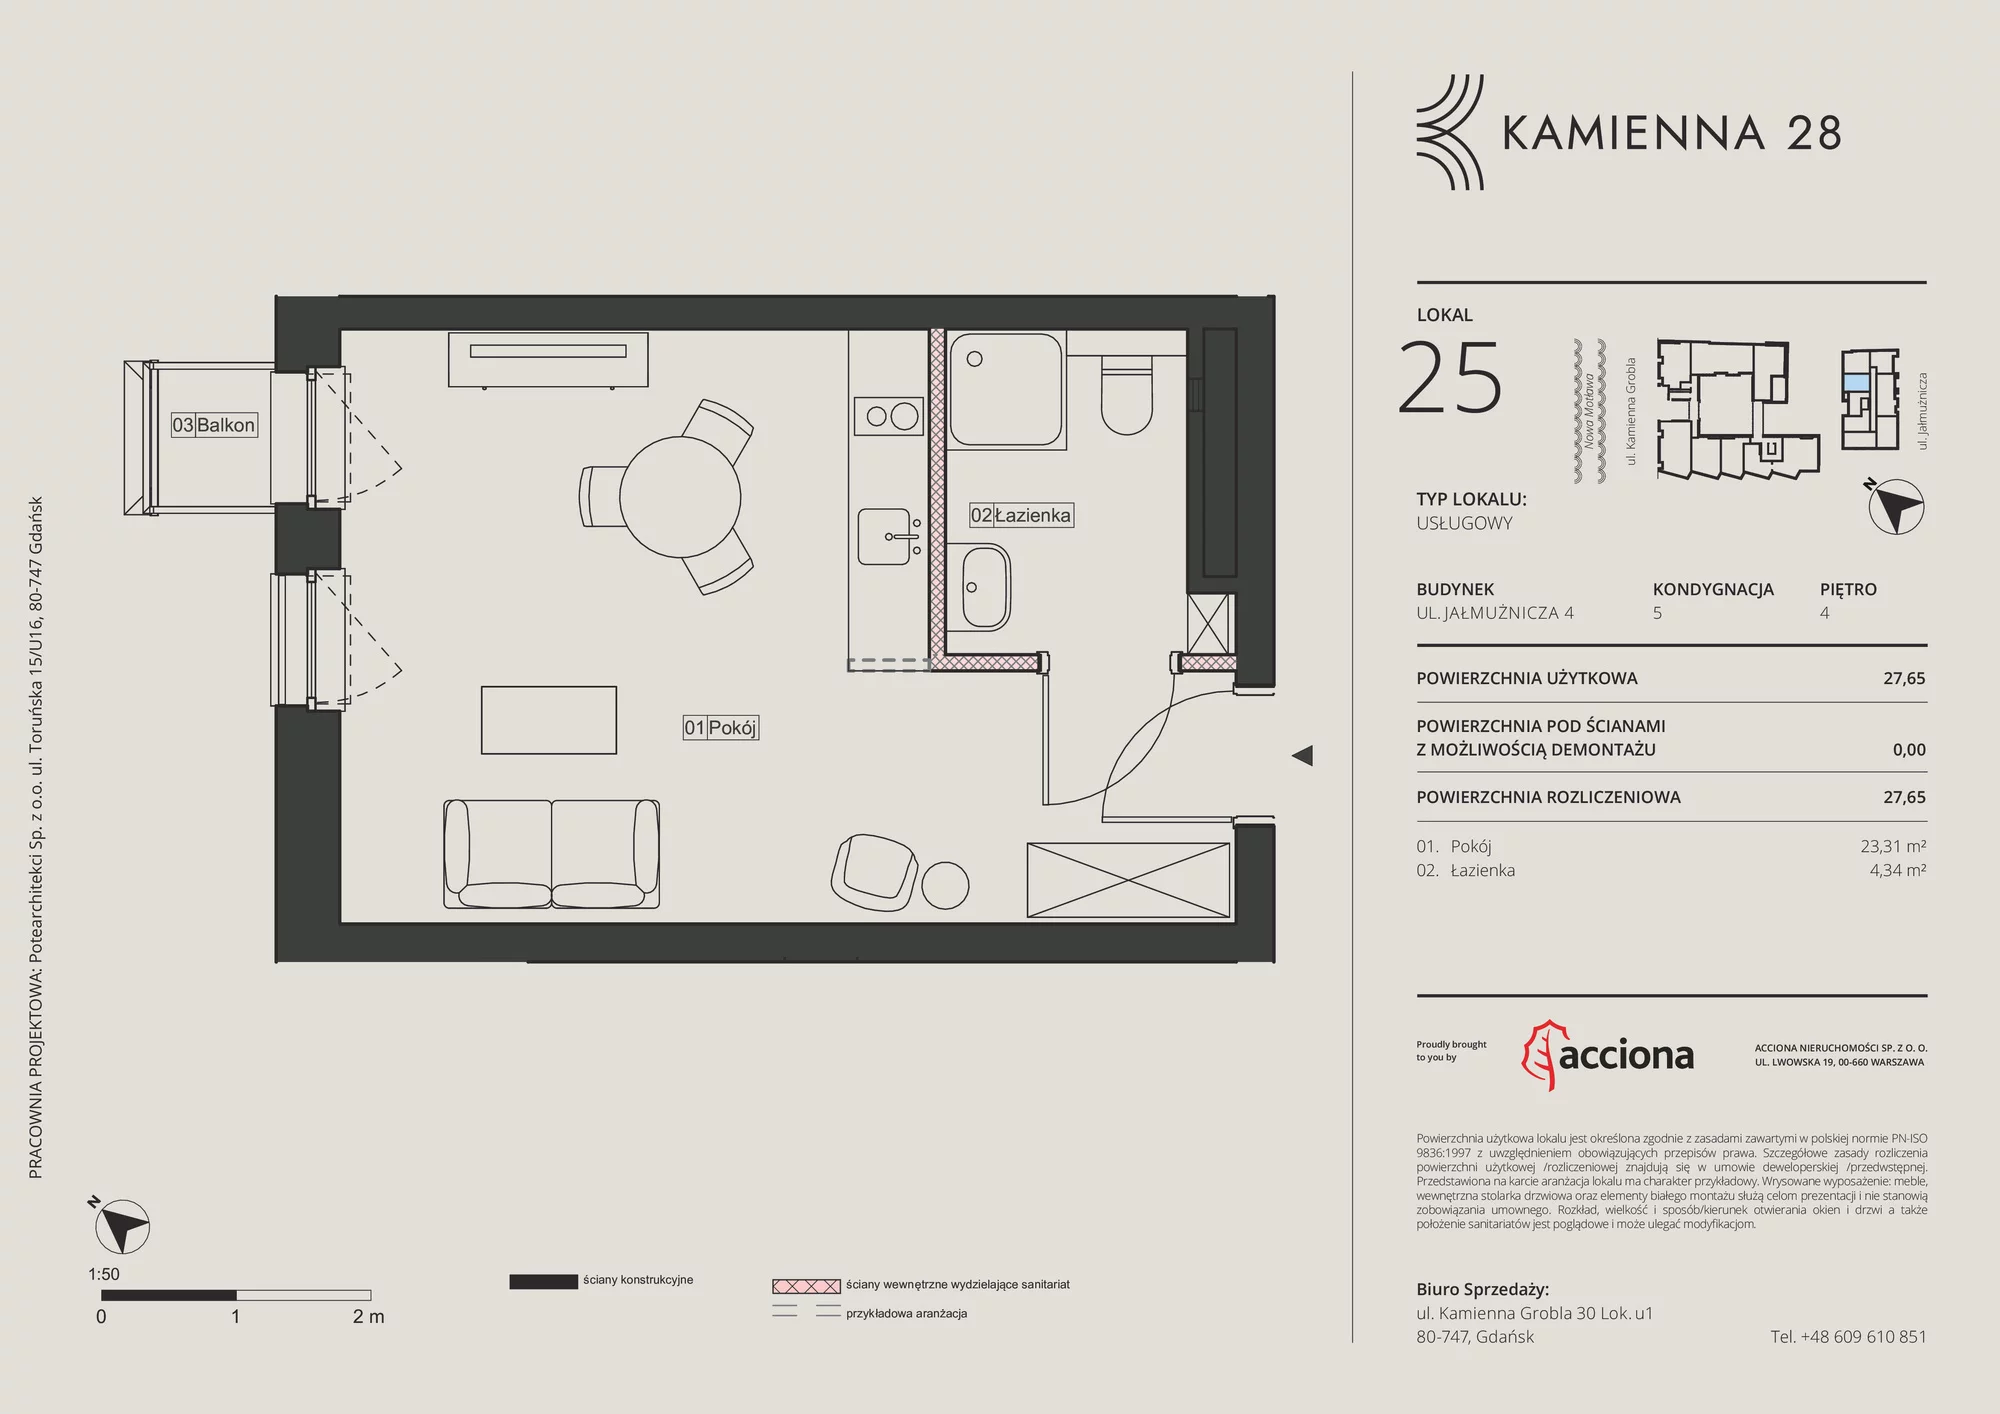 Apartament inwestycyjny 27,65 m², piętro 4, oferta nr 4.25, Kamienna 28 - apartamenty inwestycyjne, Gdańsk, Śródmieście, Dolne Miasto, ul. Jałmużnicza 4